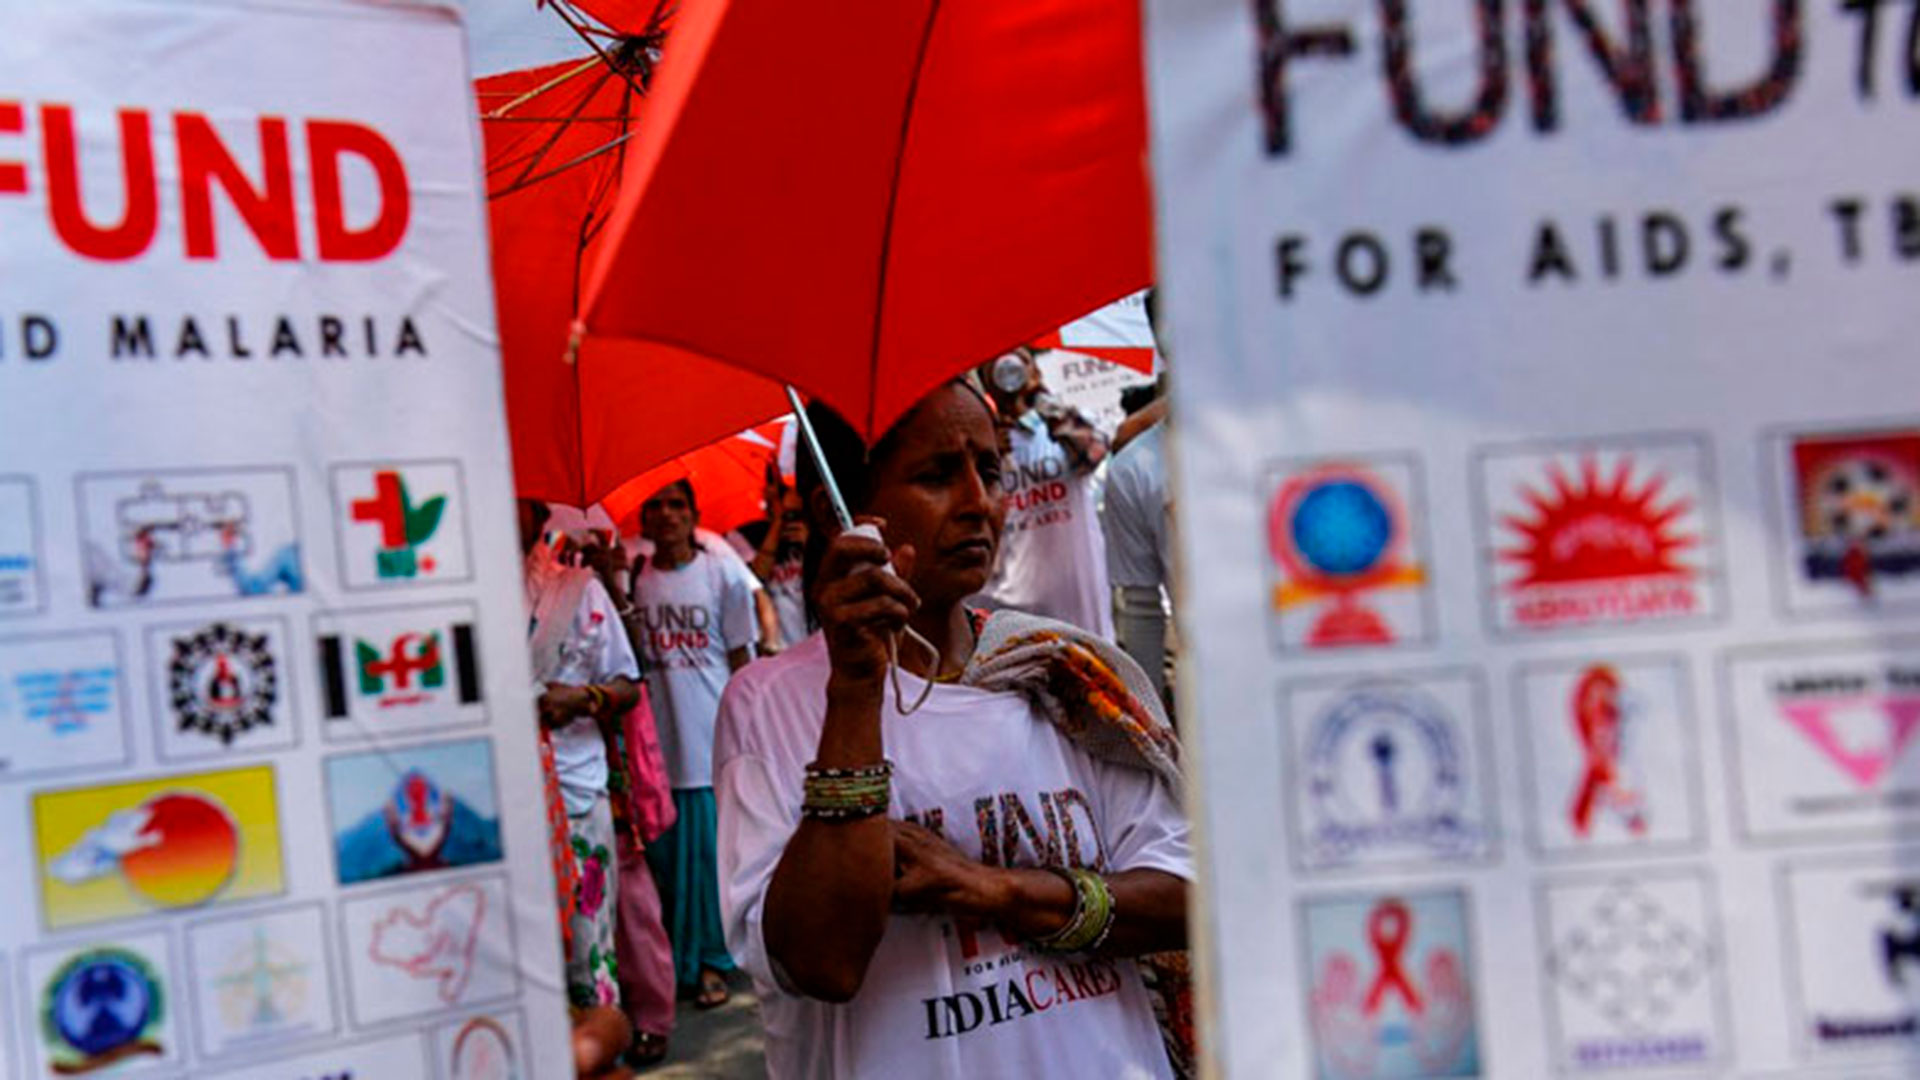 Una manifestación en Nueva Delhi, el 10 de mayo de 2016 para instar a China, Alemania y Japón a intensificar sus contribuciones al Fondo Mundial. (Imagen: CHANDAN KHANNA / AFP)
